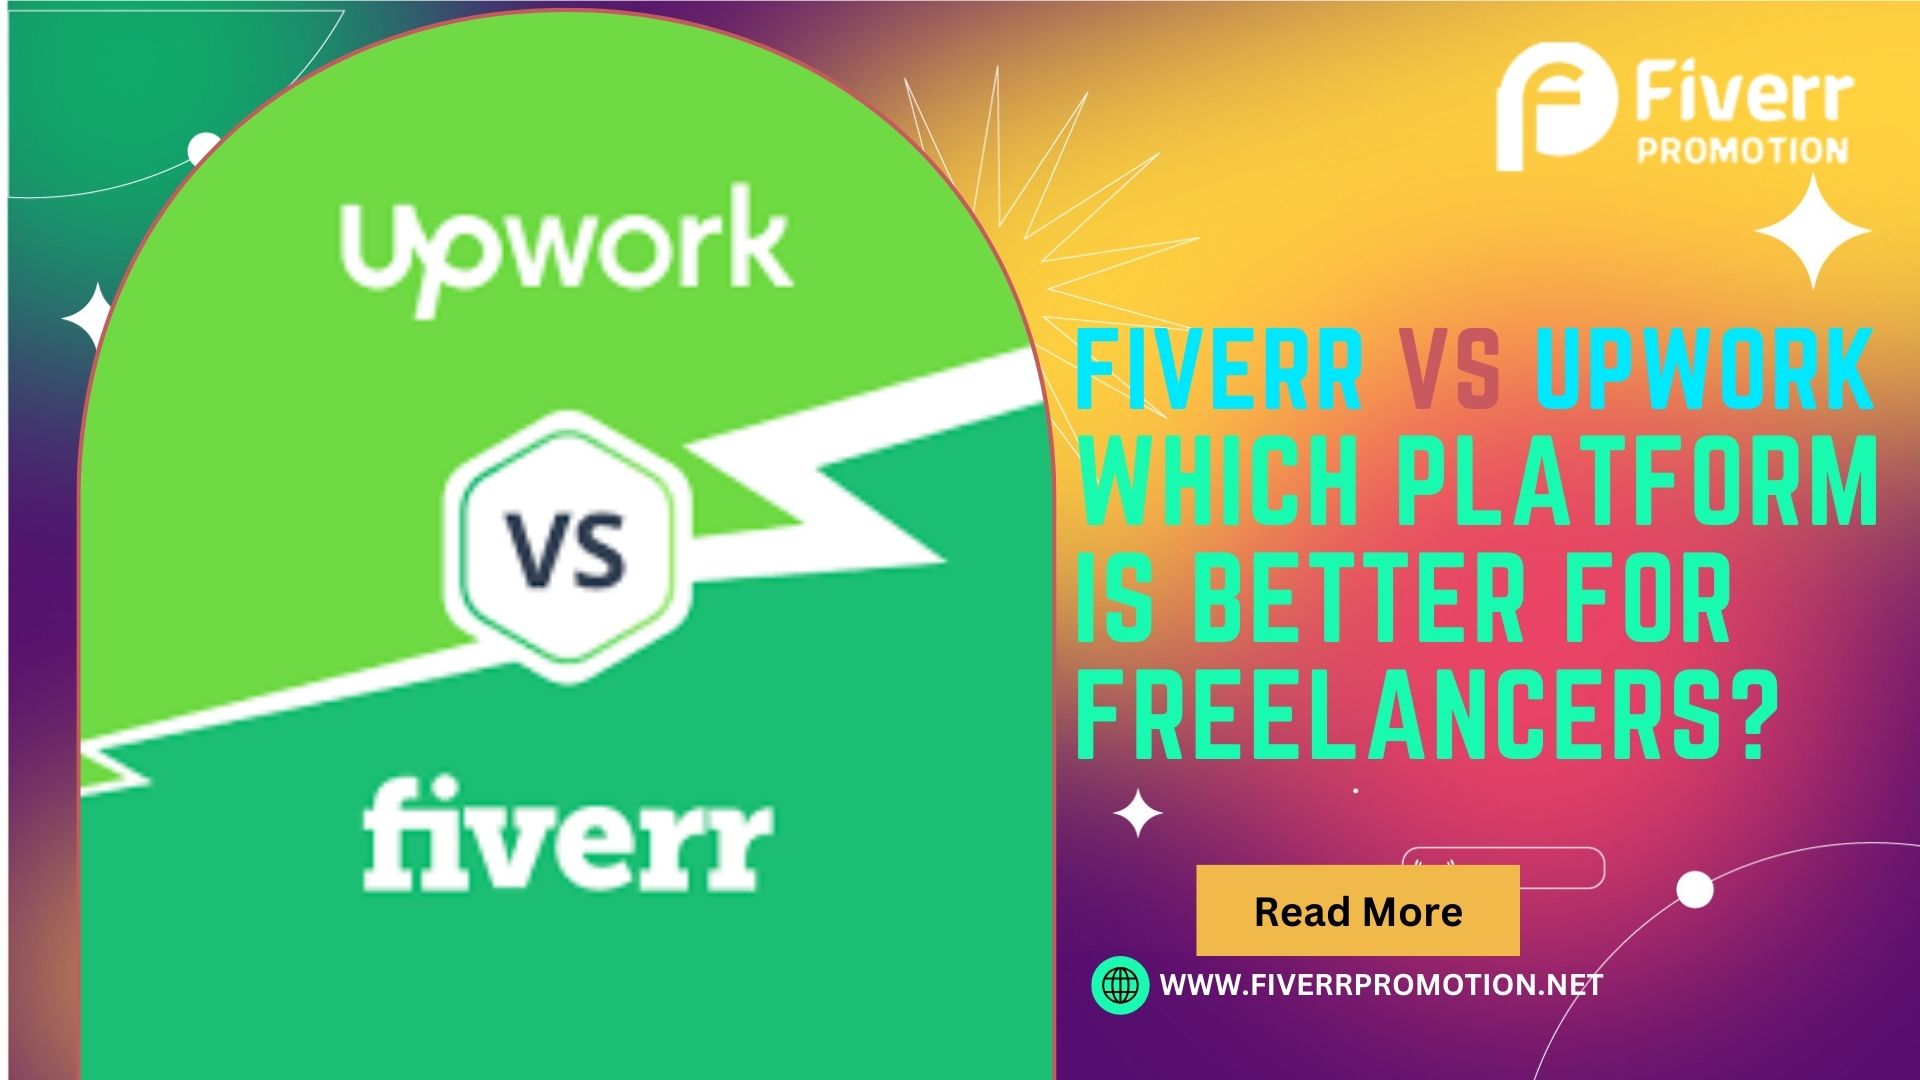 Fiverr vs. Upwork: Which platform is better for freelancers?